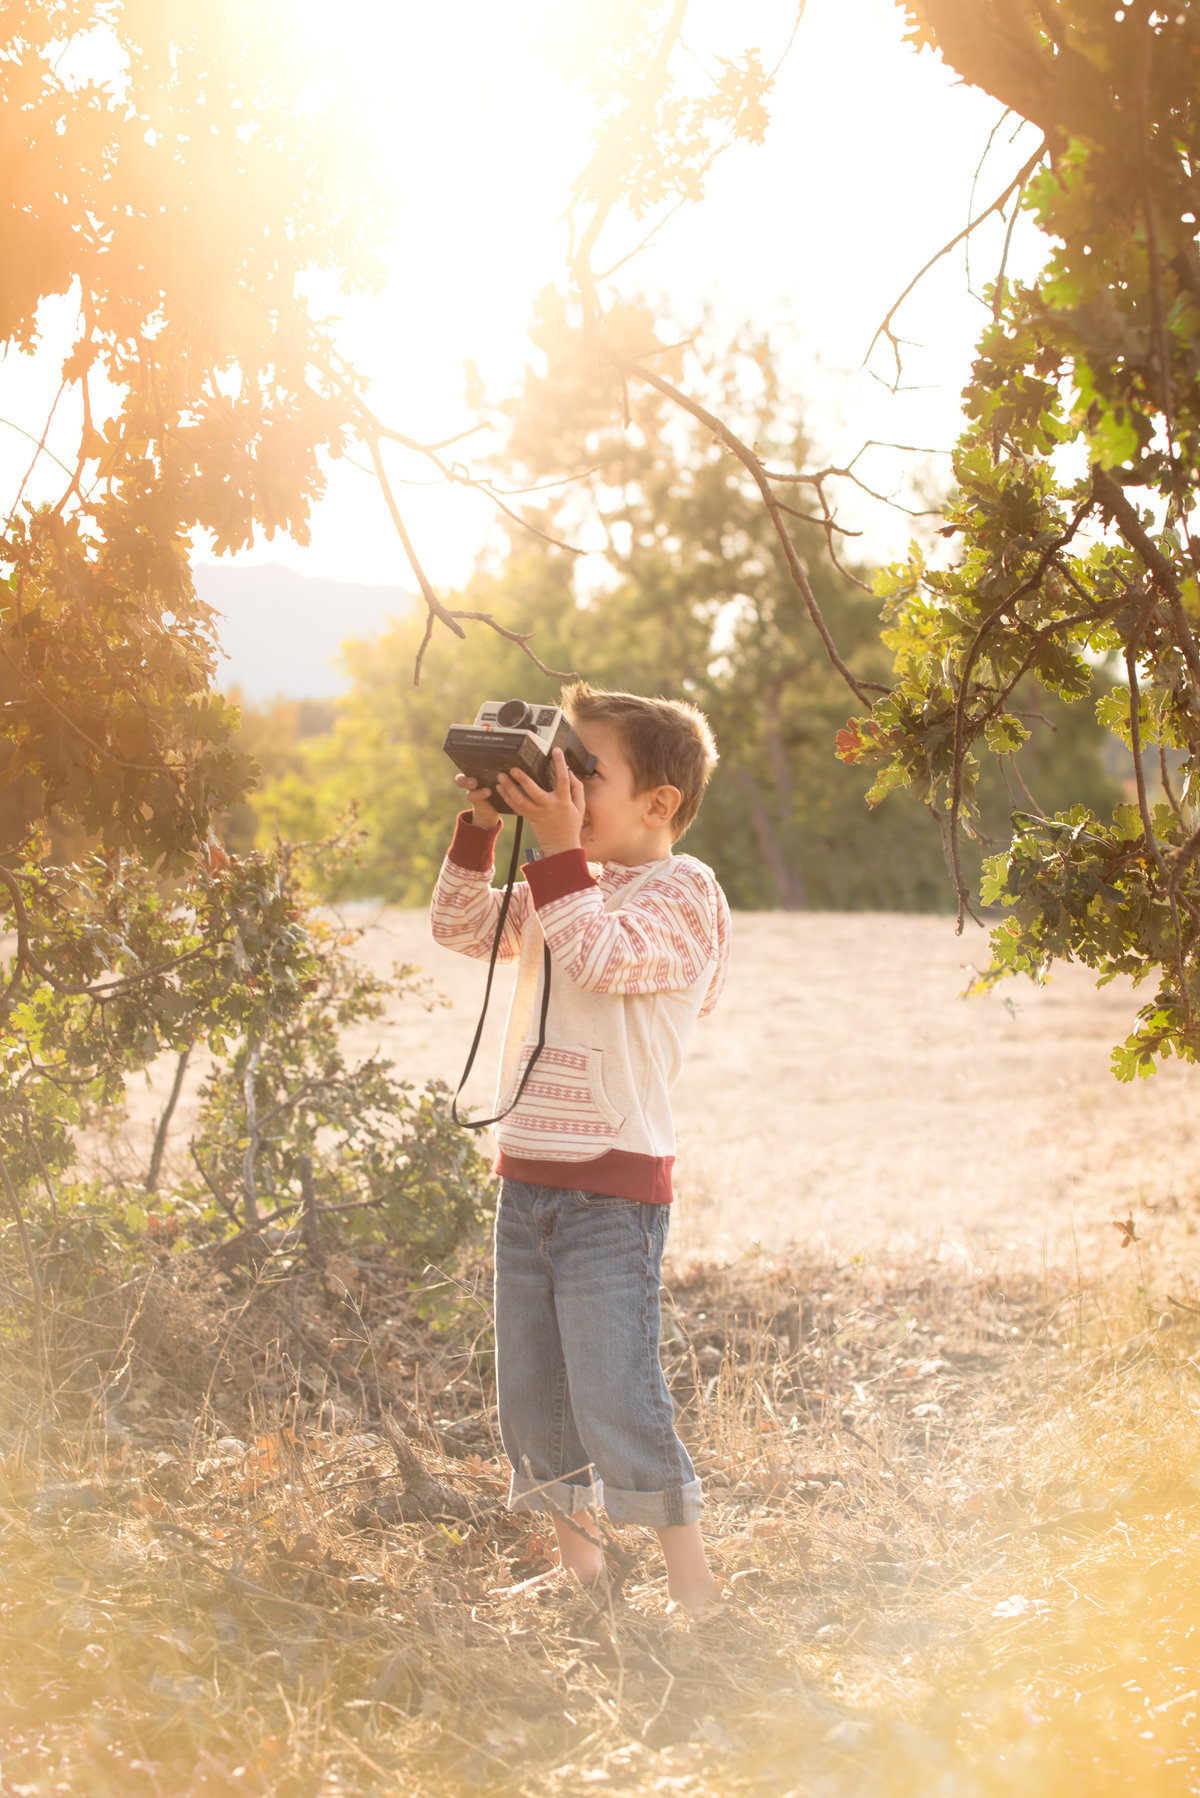 Trevor Morrison children photography, family photography, wedding photography, Ventura County